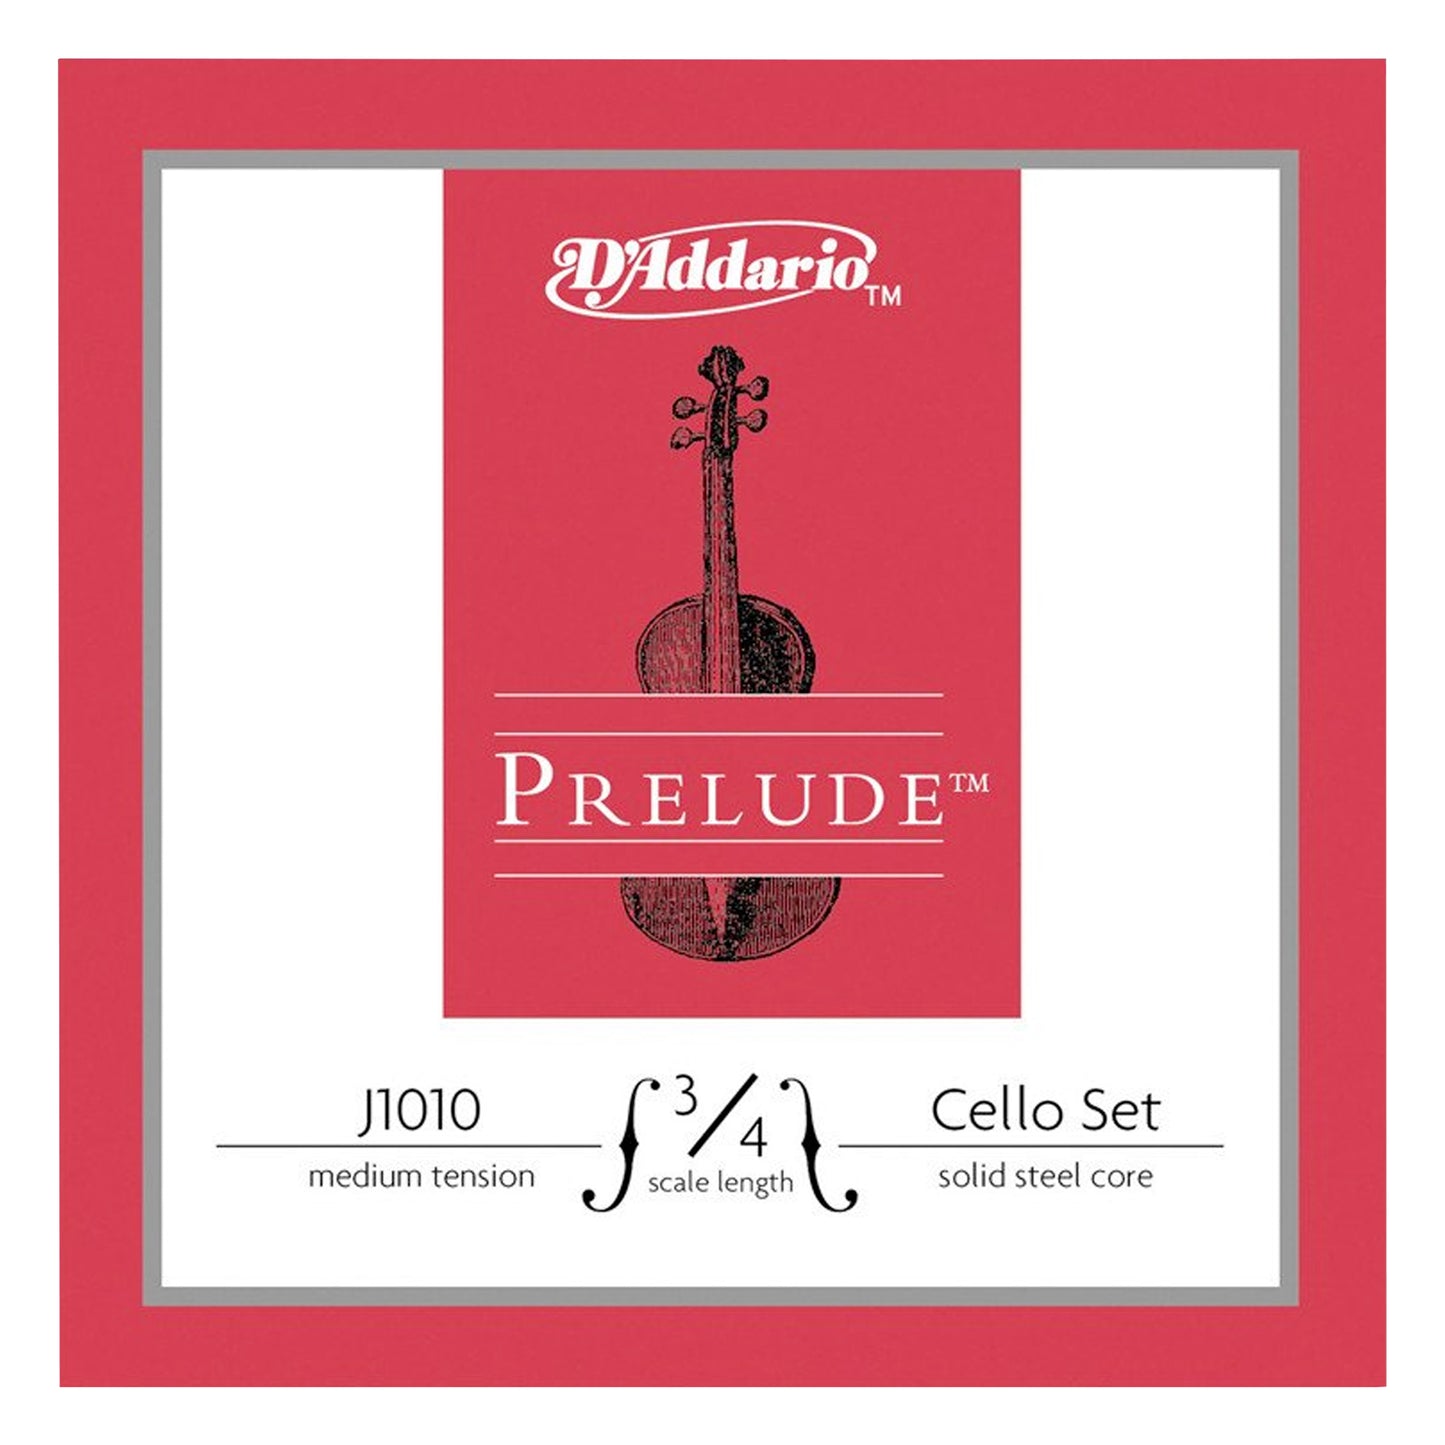 D'Addario J1010 Prelude Cello 3/4 Scale Medium Tension